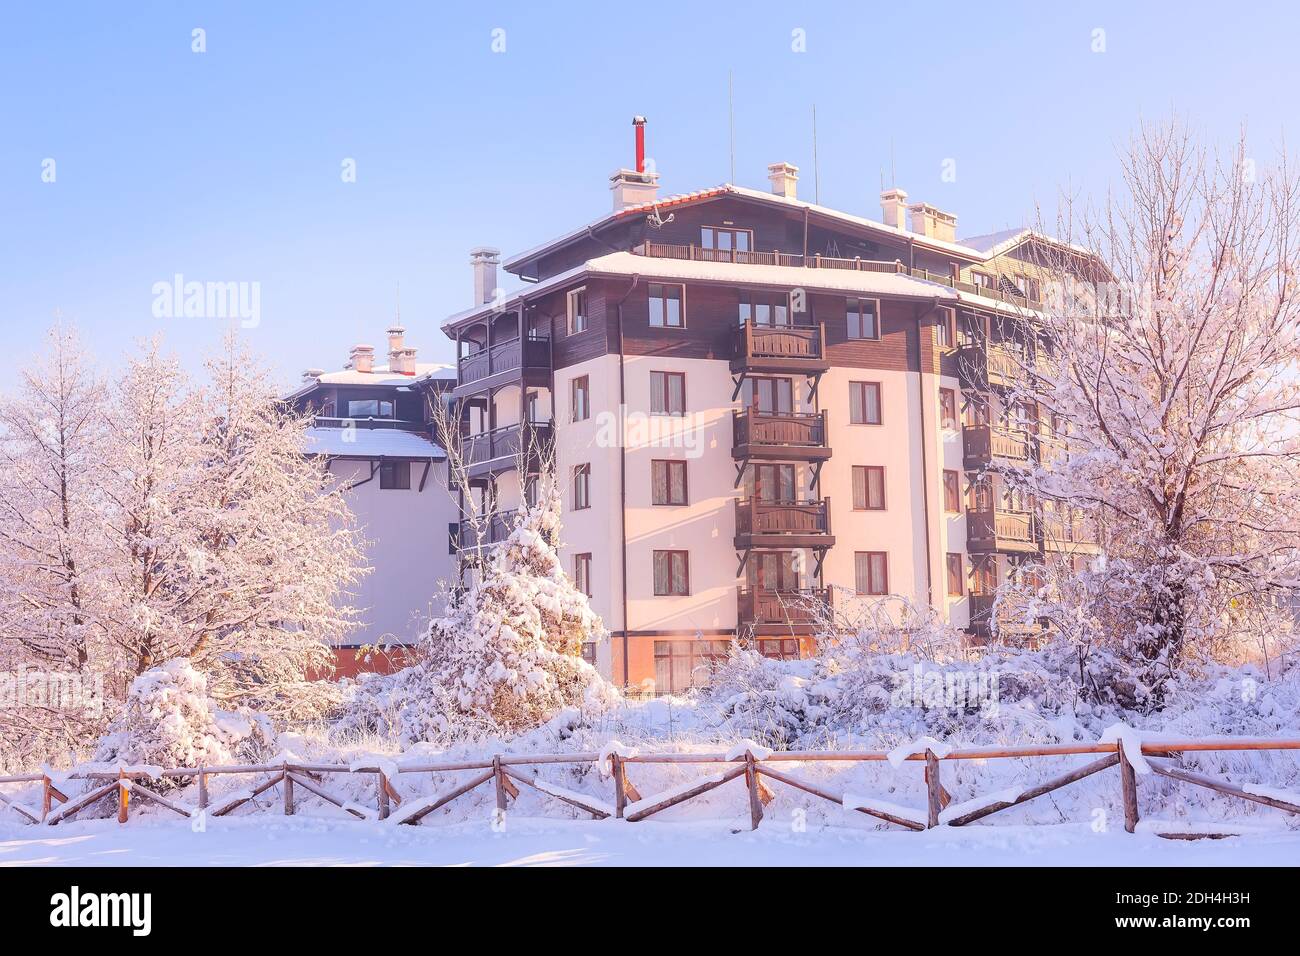 Station de ski Bansko, maisons de Bulgarie Banque D'Images